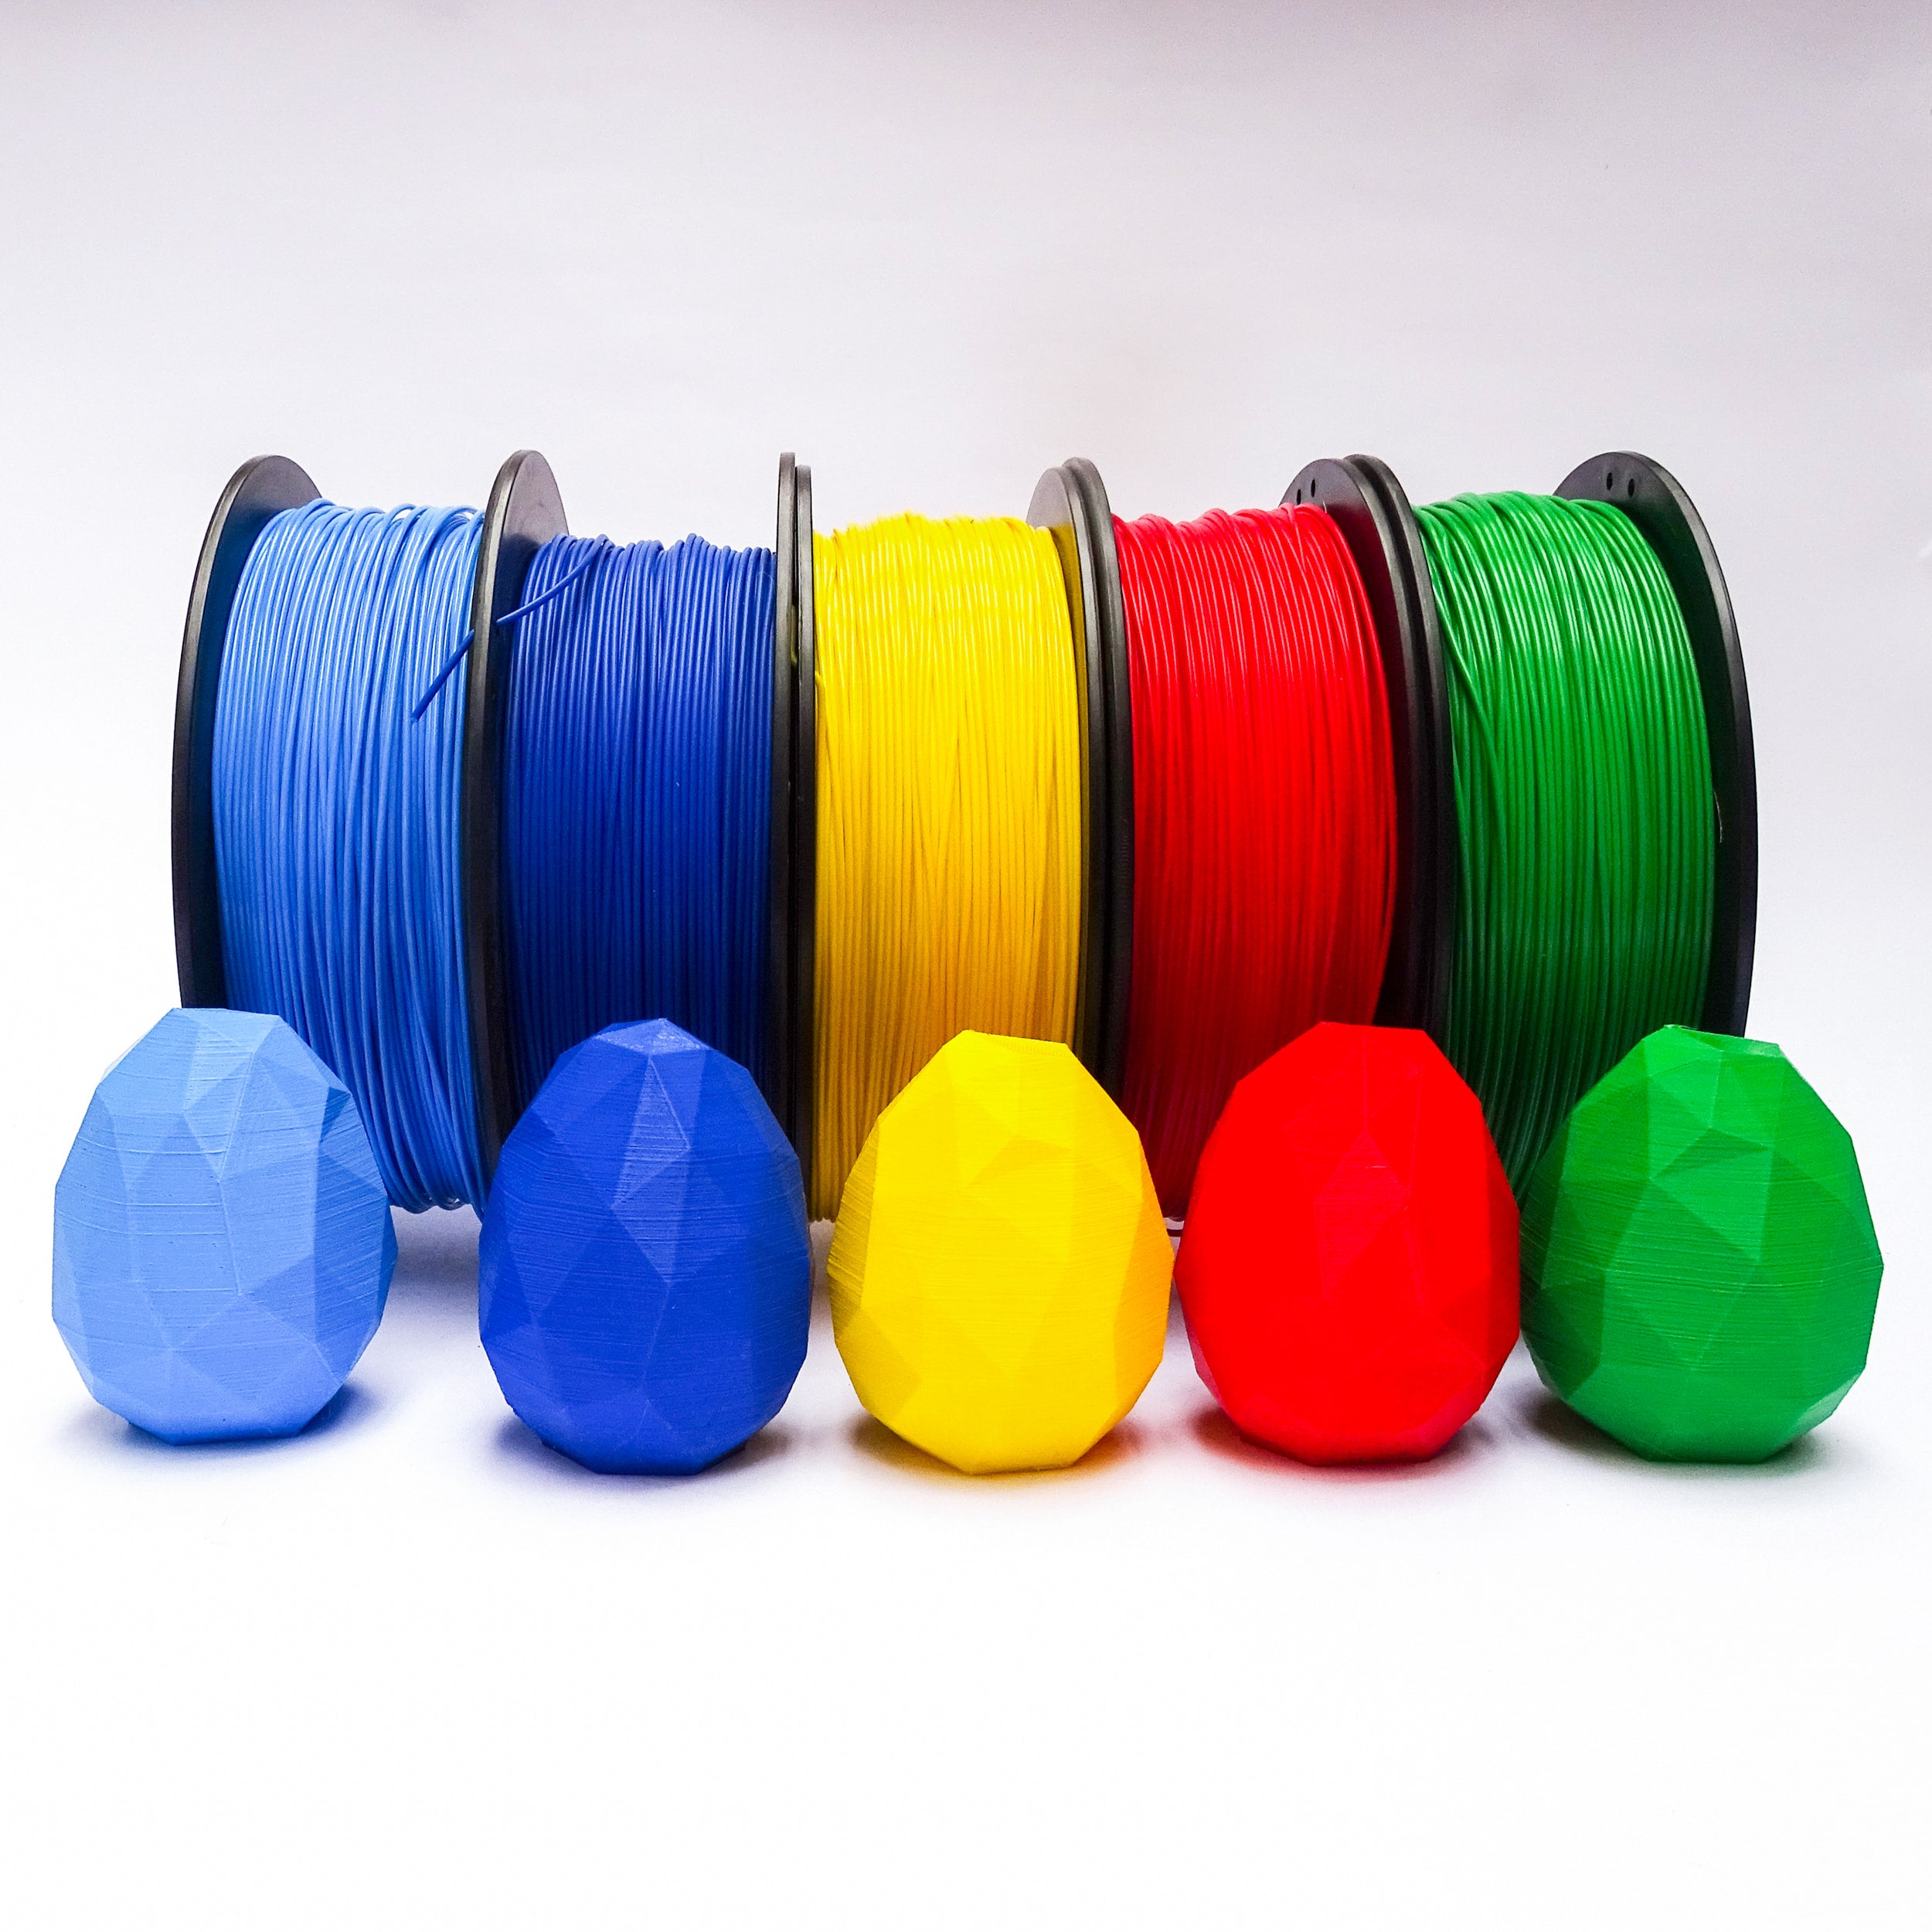 cinco filamentos pla Print3x Celeste, azul, amarillo, rojo y verde con impresiones 3d de huevos impresos printex printec print3c